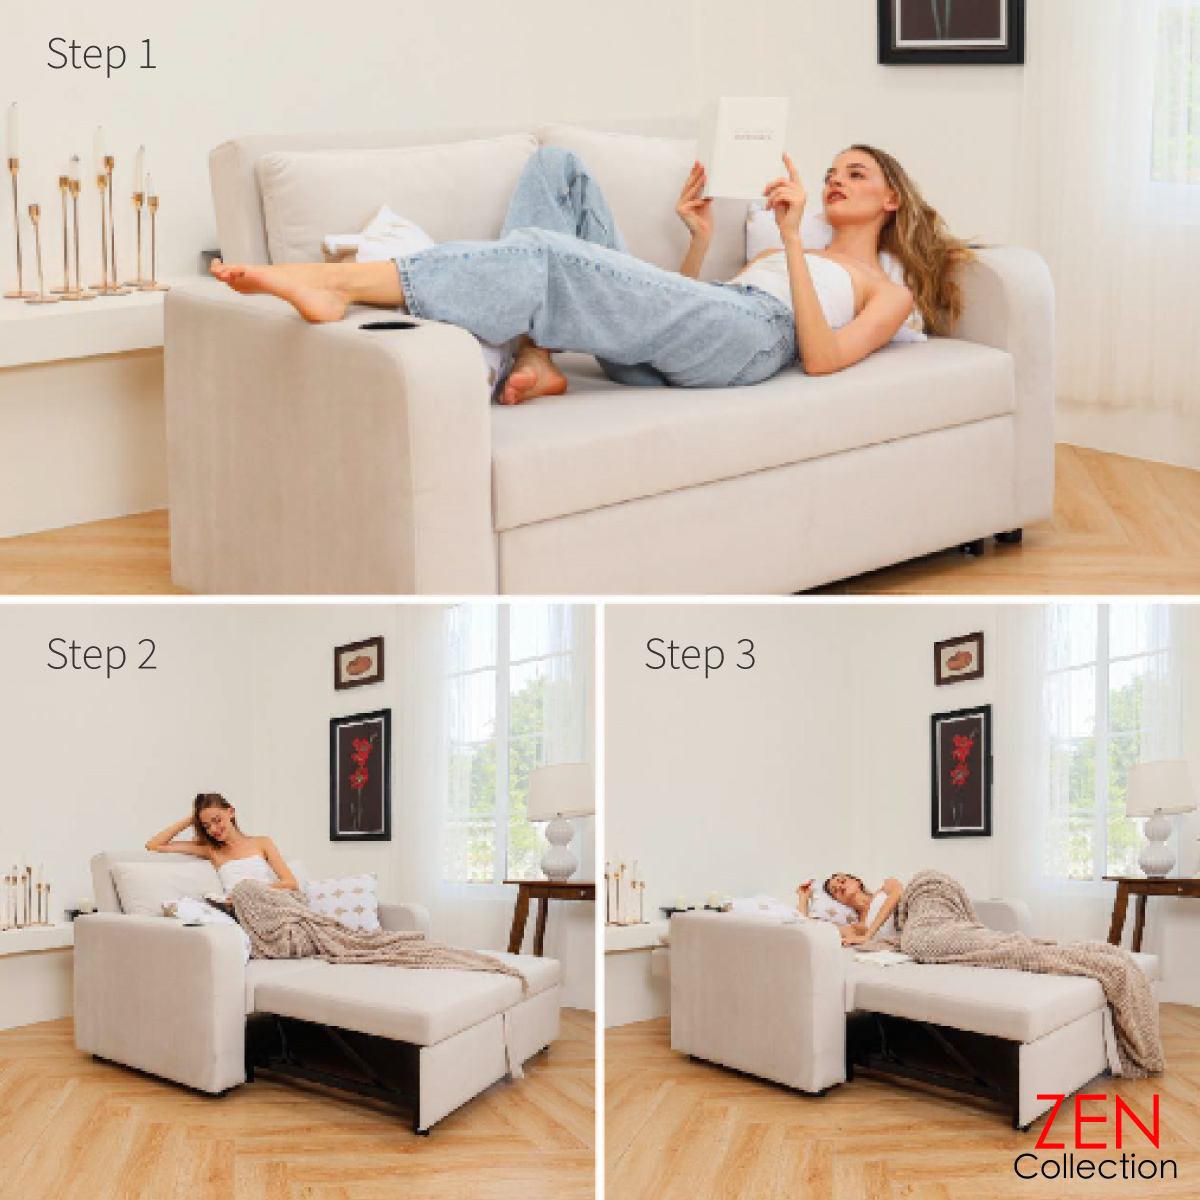 โซฟา ZEN Collection เบ้ด ปรับนอน ขนาด 1.65 m. EDDY Nordic Sofa Bed ปรับนอนได้ 2 ระดับ